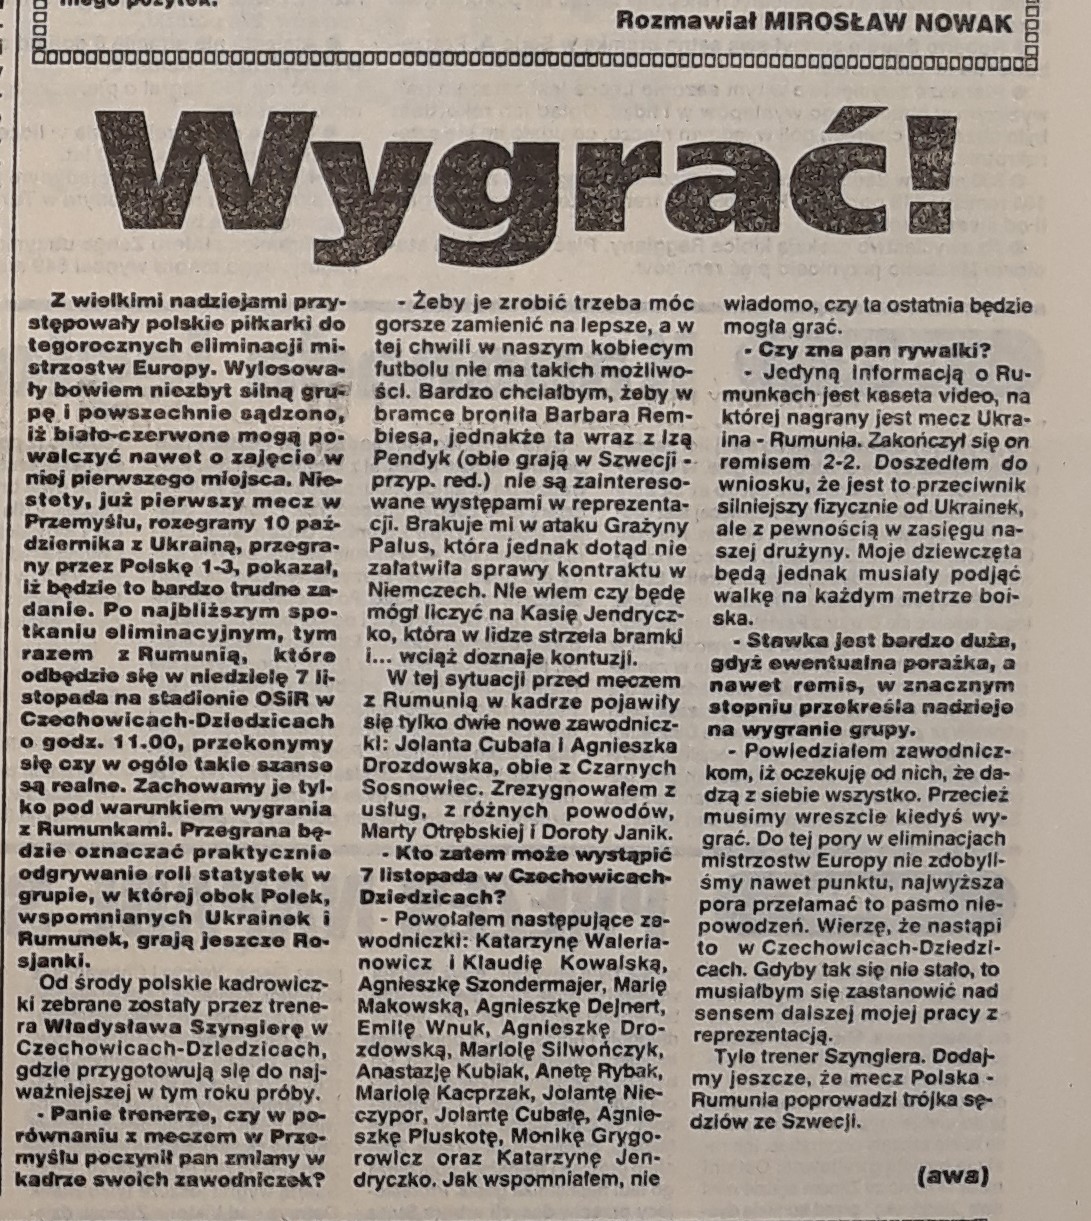 1993 pol rom wstepniak